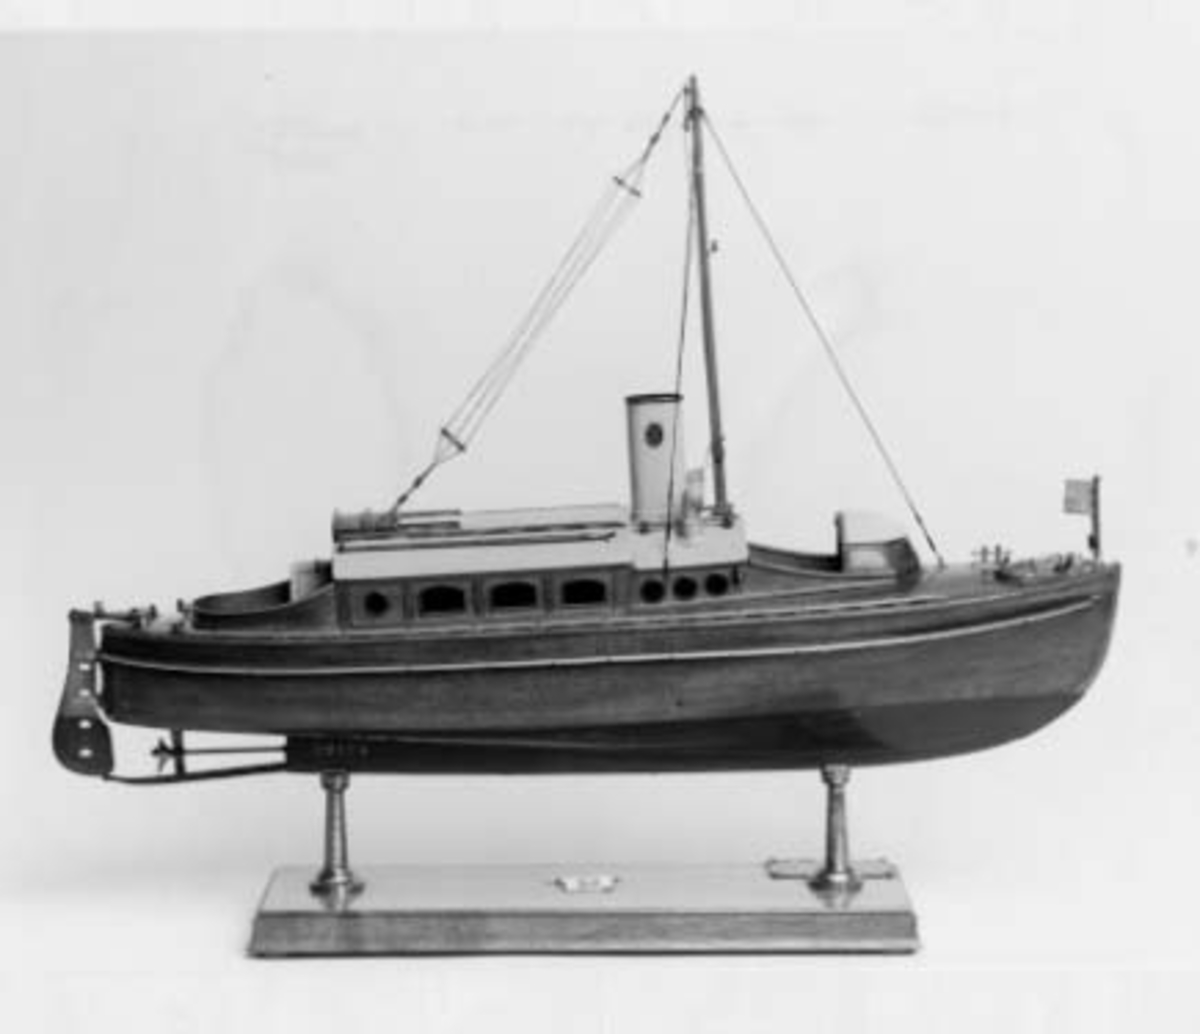 Modell av Borgila IV  som i original konstruerades av R. Östlund och var 9,1 m lång och 2,04 m bred.
Modellen har standert i masttoppen och flagga i fören, liksom ankare på fördäck.